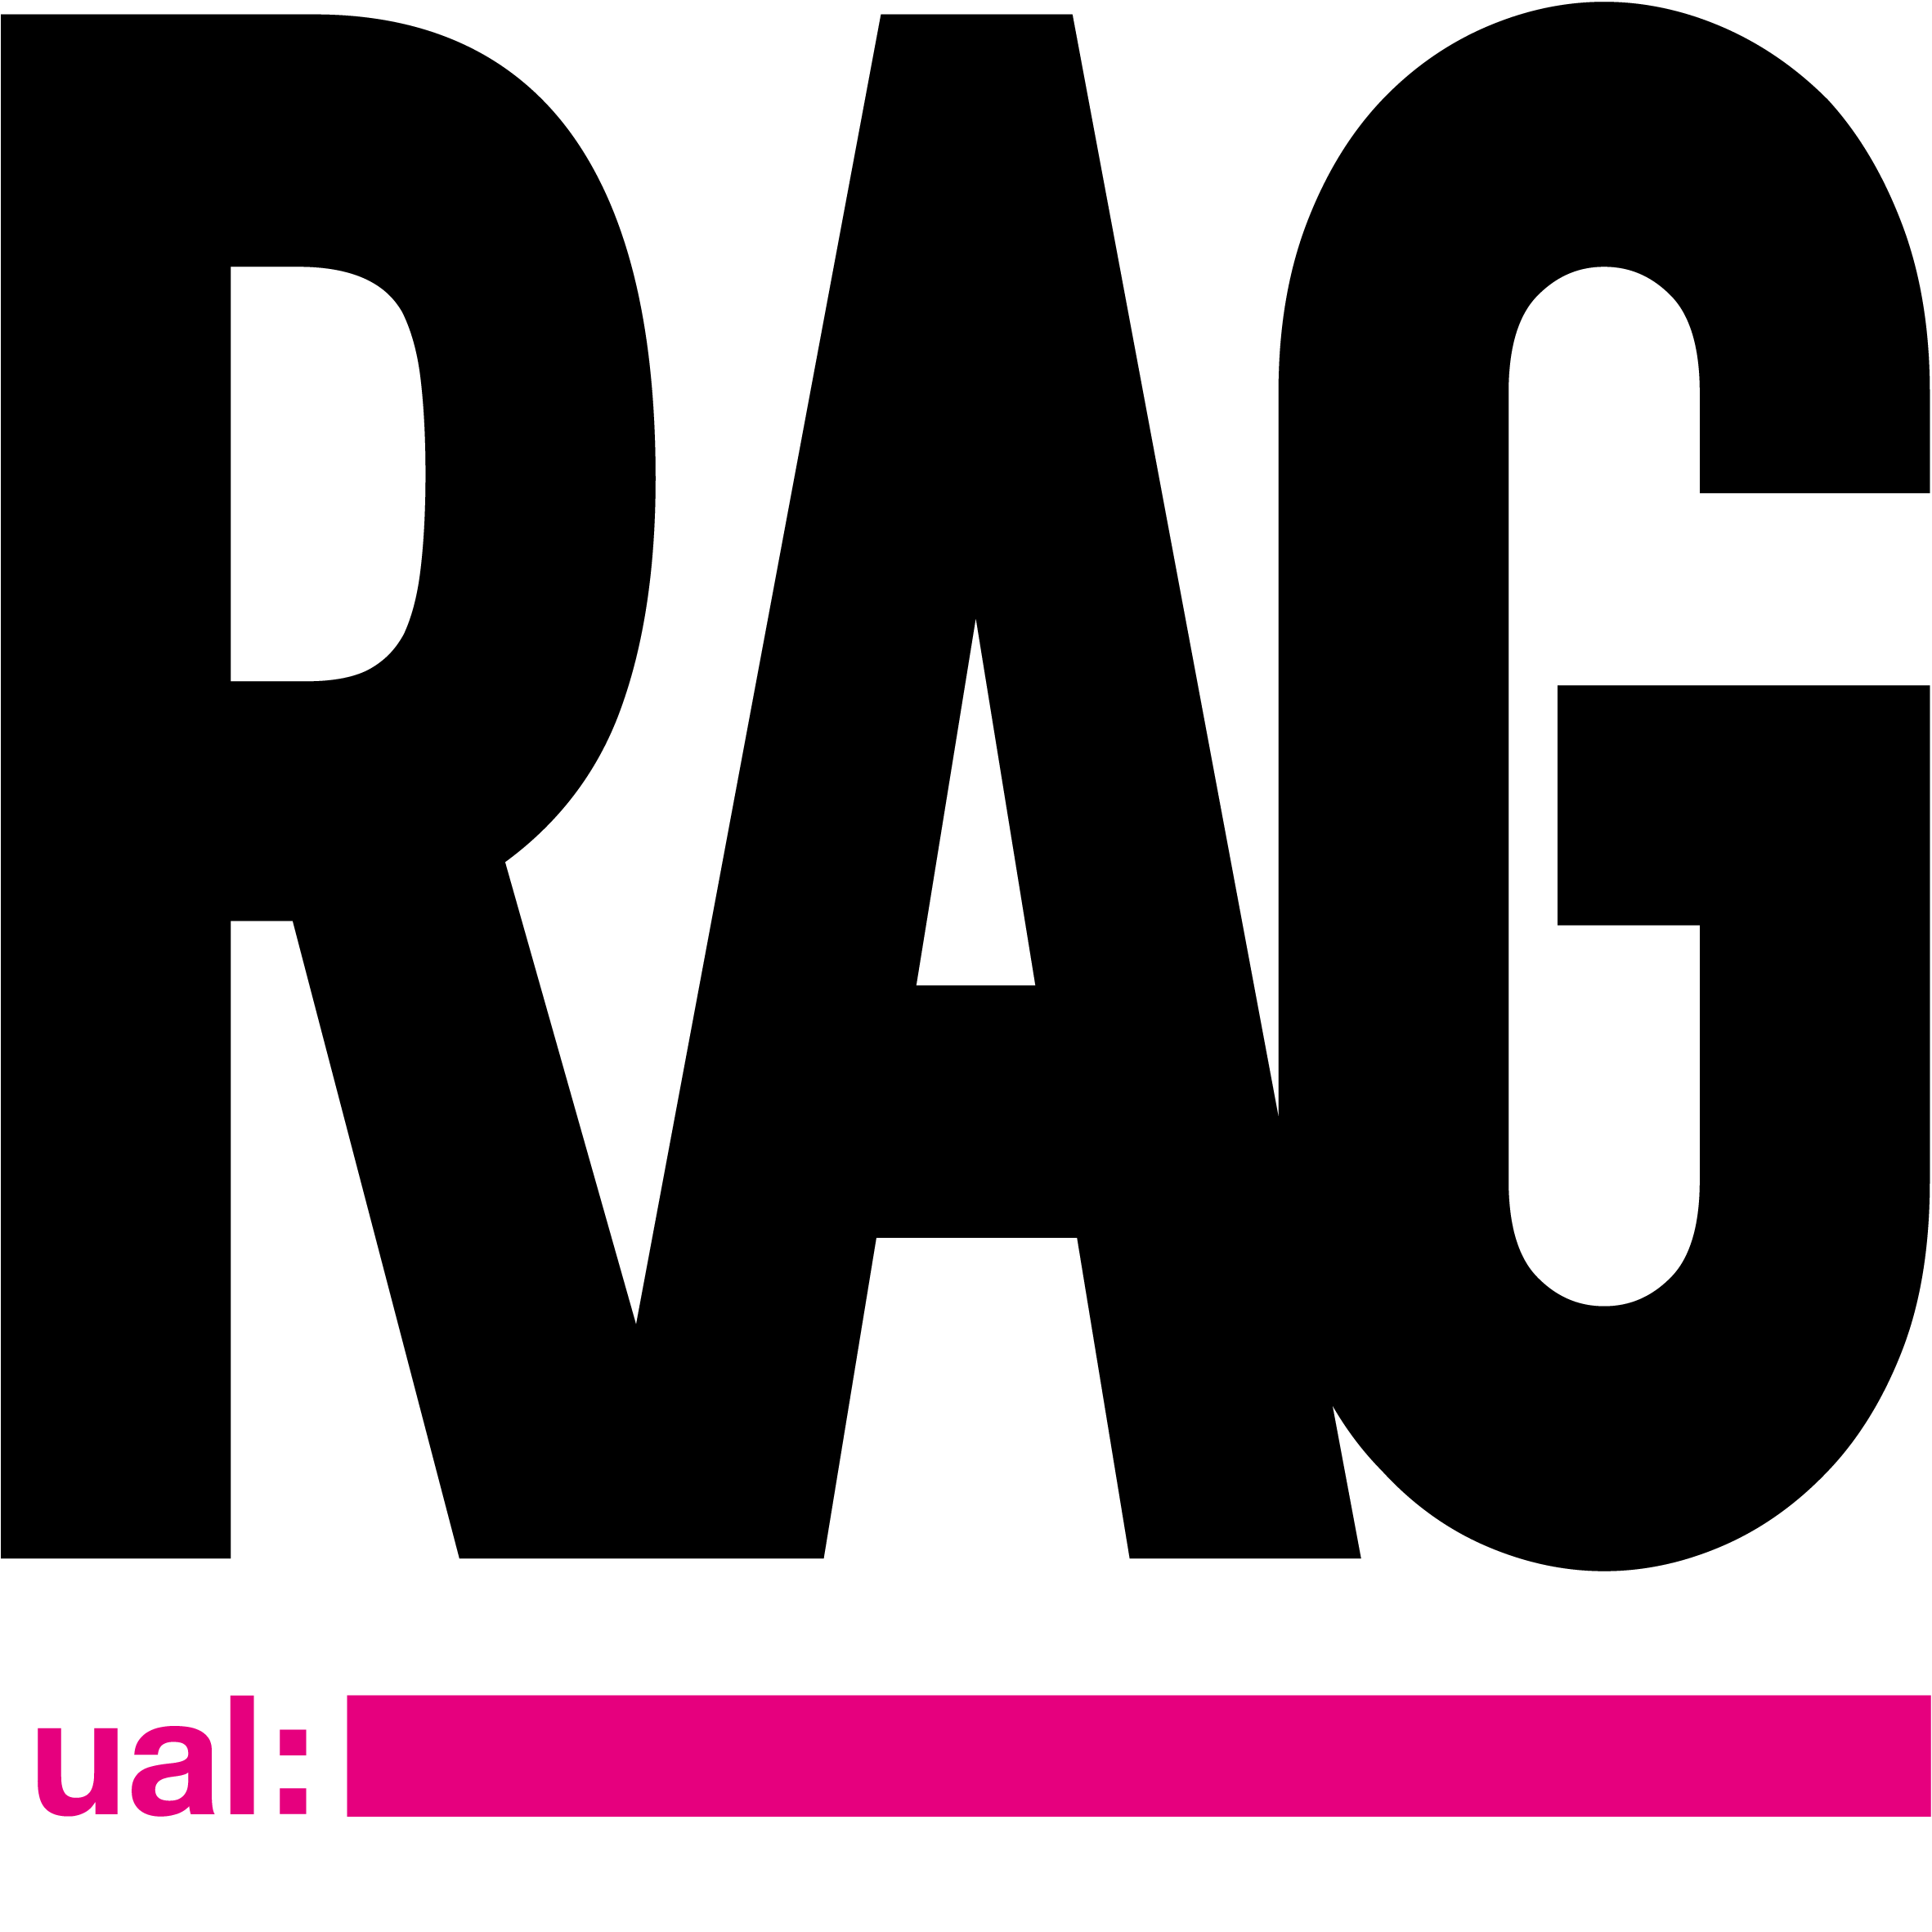 UAL RAG logo 1.png